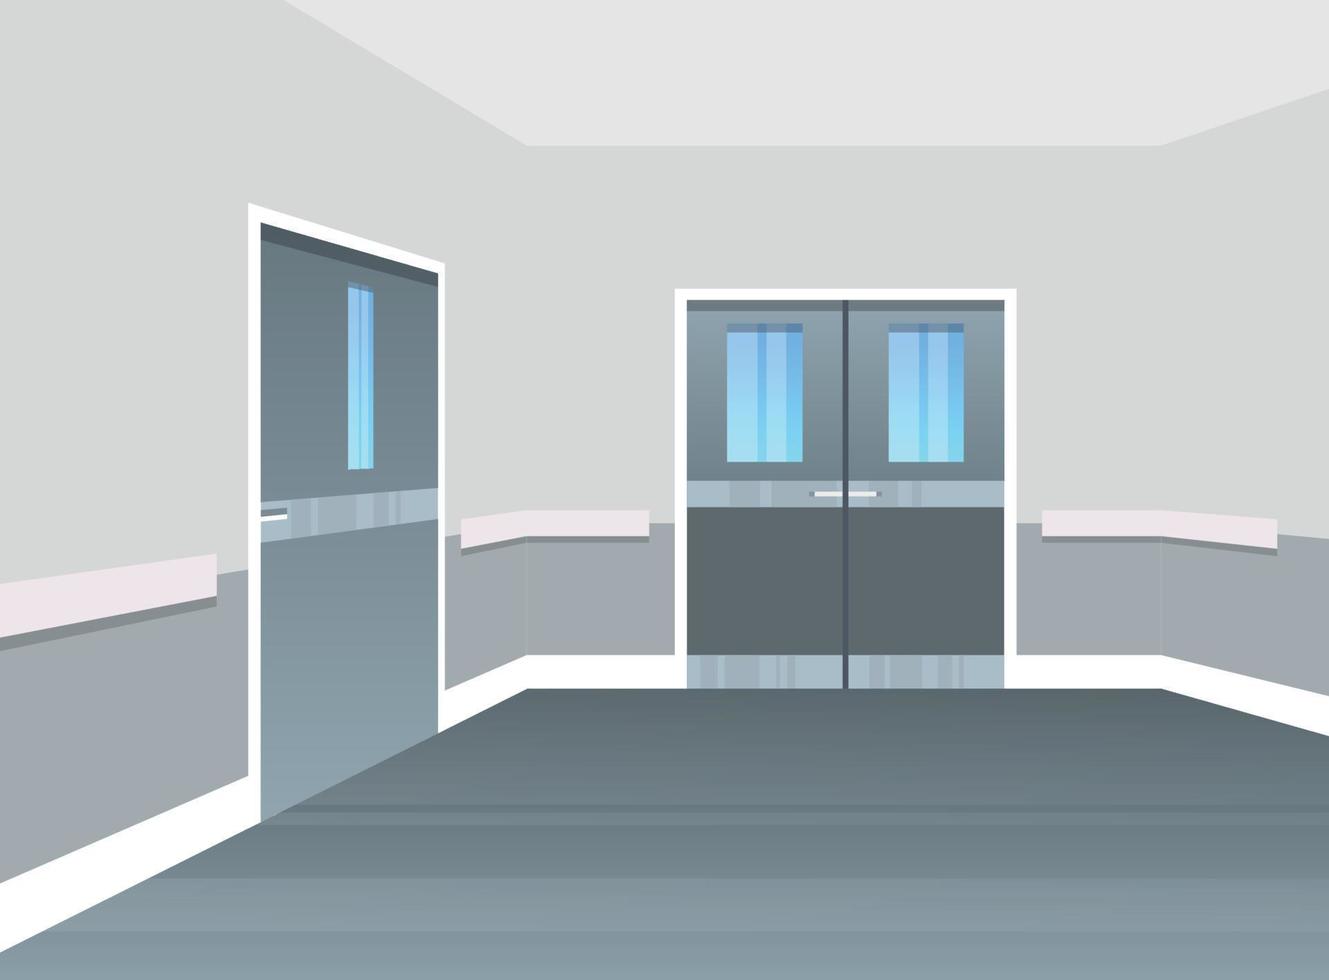 área vacía del pasillo del hospital sin personas e ilustración de diseño plano interior del hospital moderno. vector